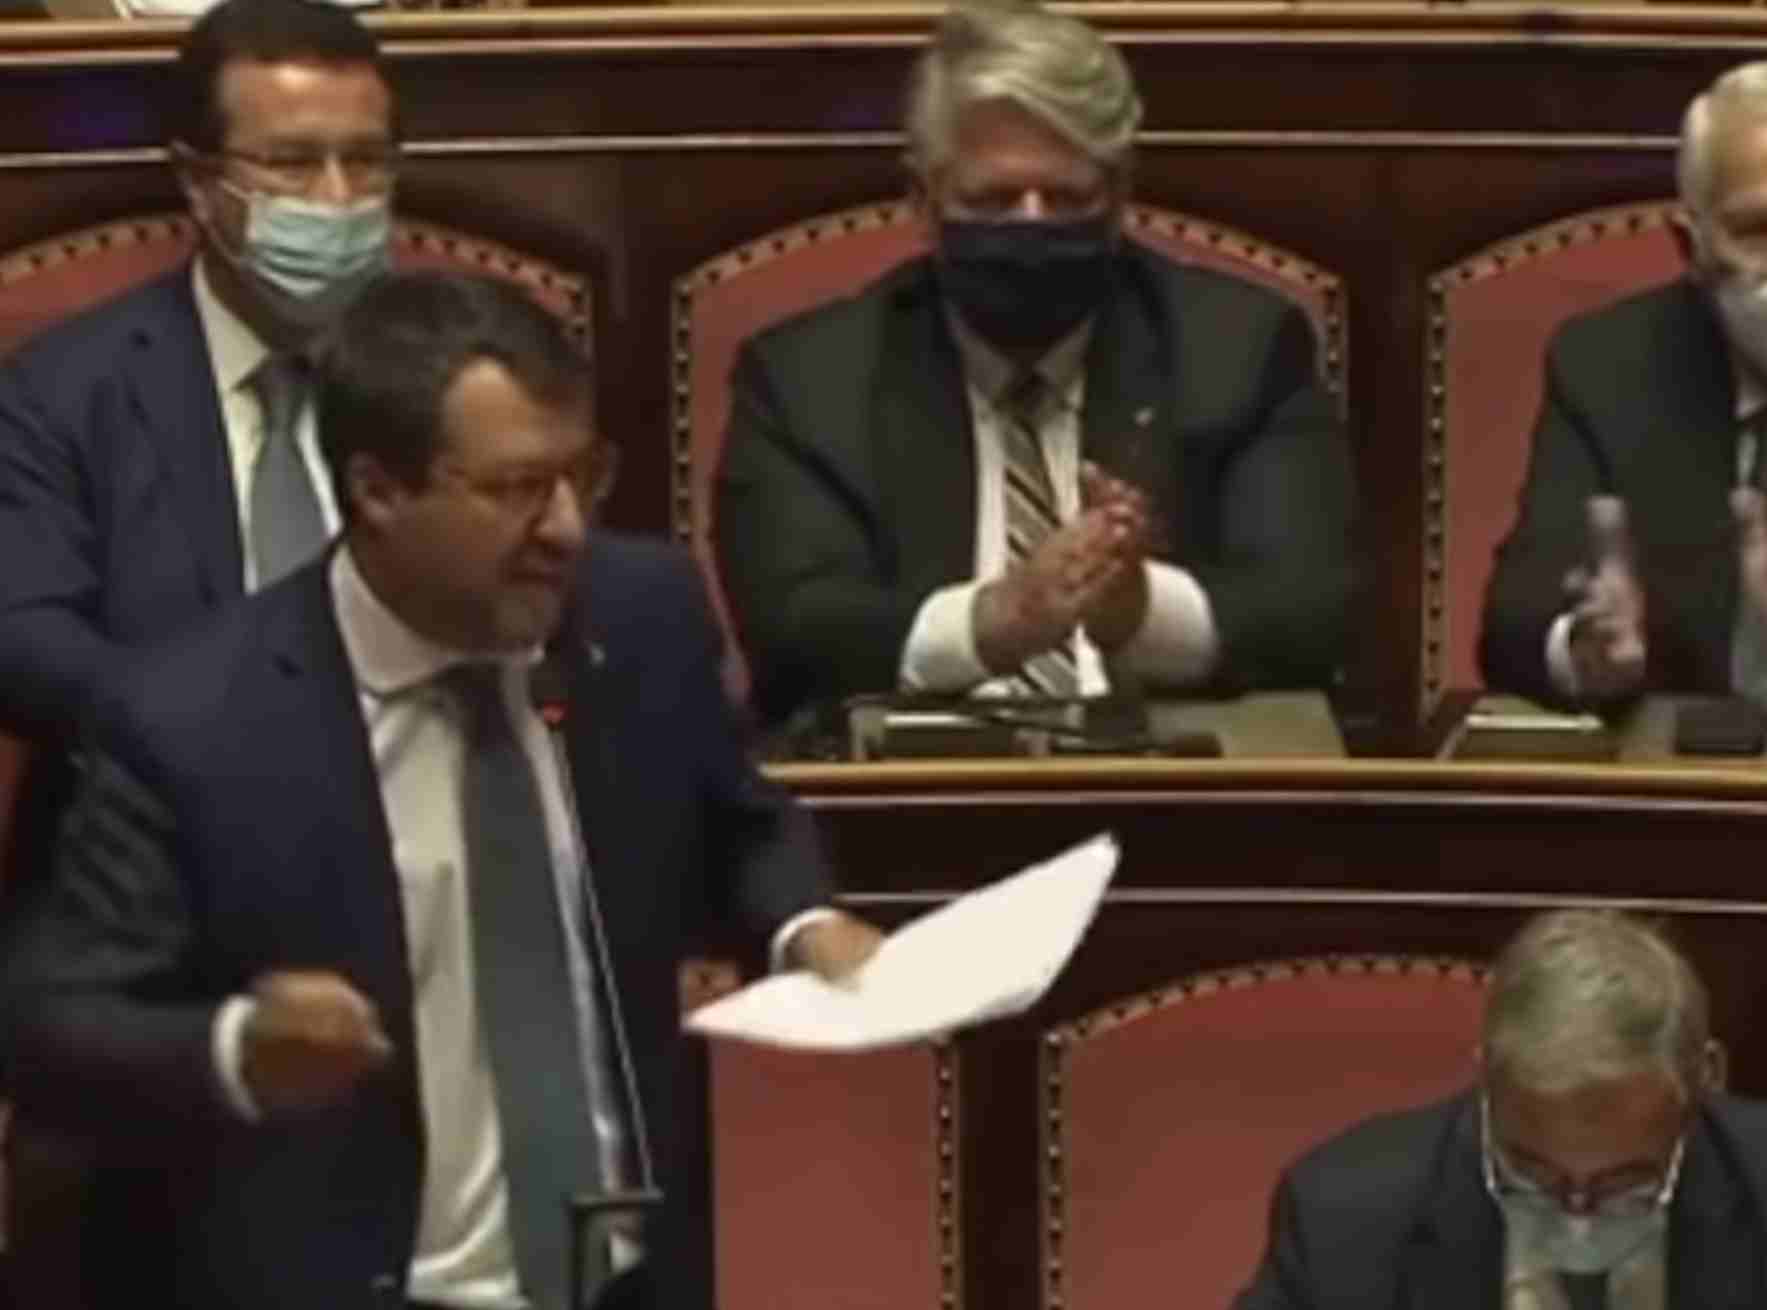 Senato dice sì a processo per Salvini, dopo lo stop alla democrazia chiesta anche la testa del leader dell'opposizione 1